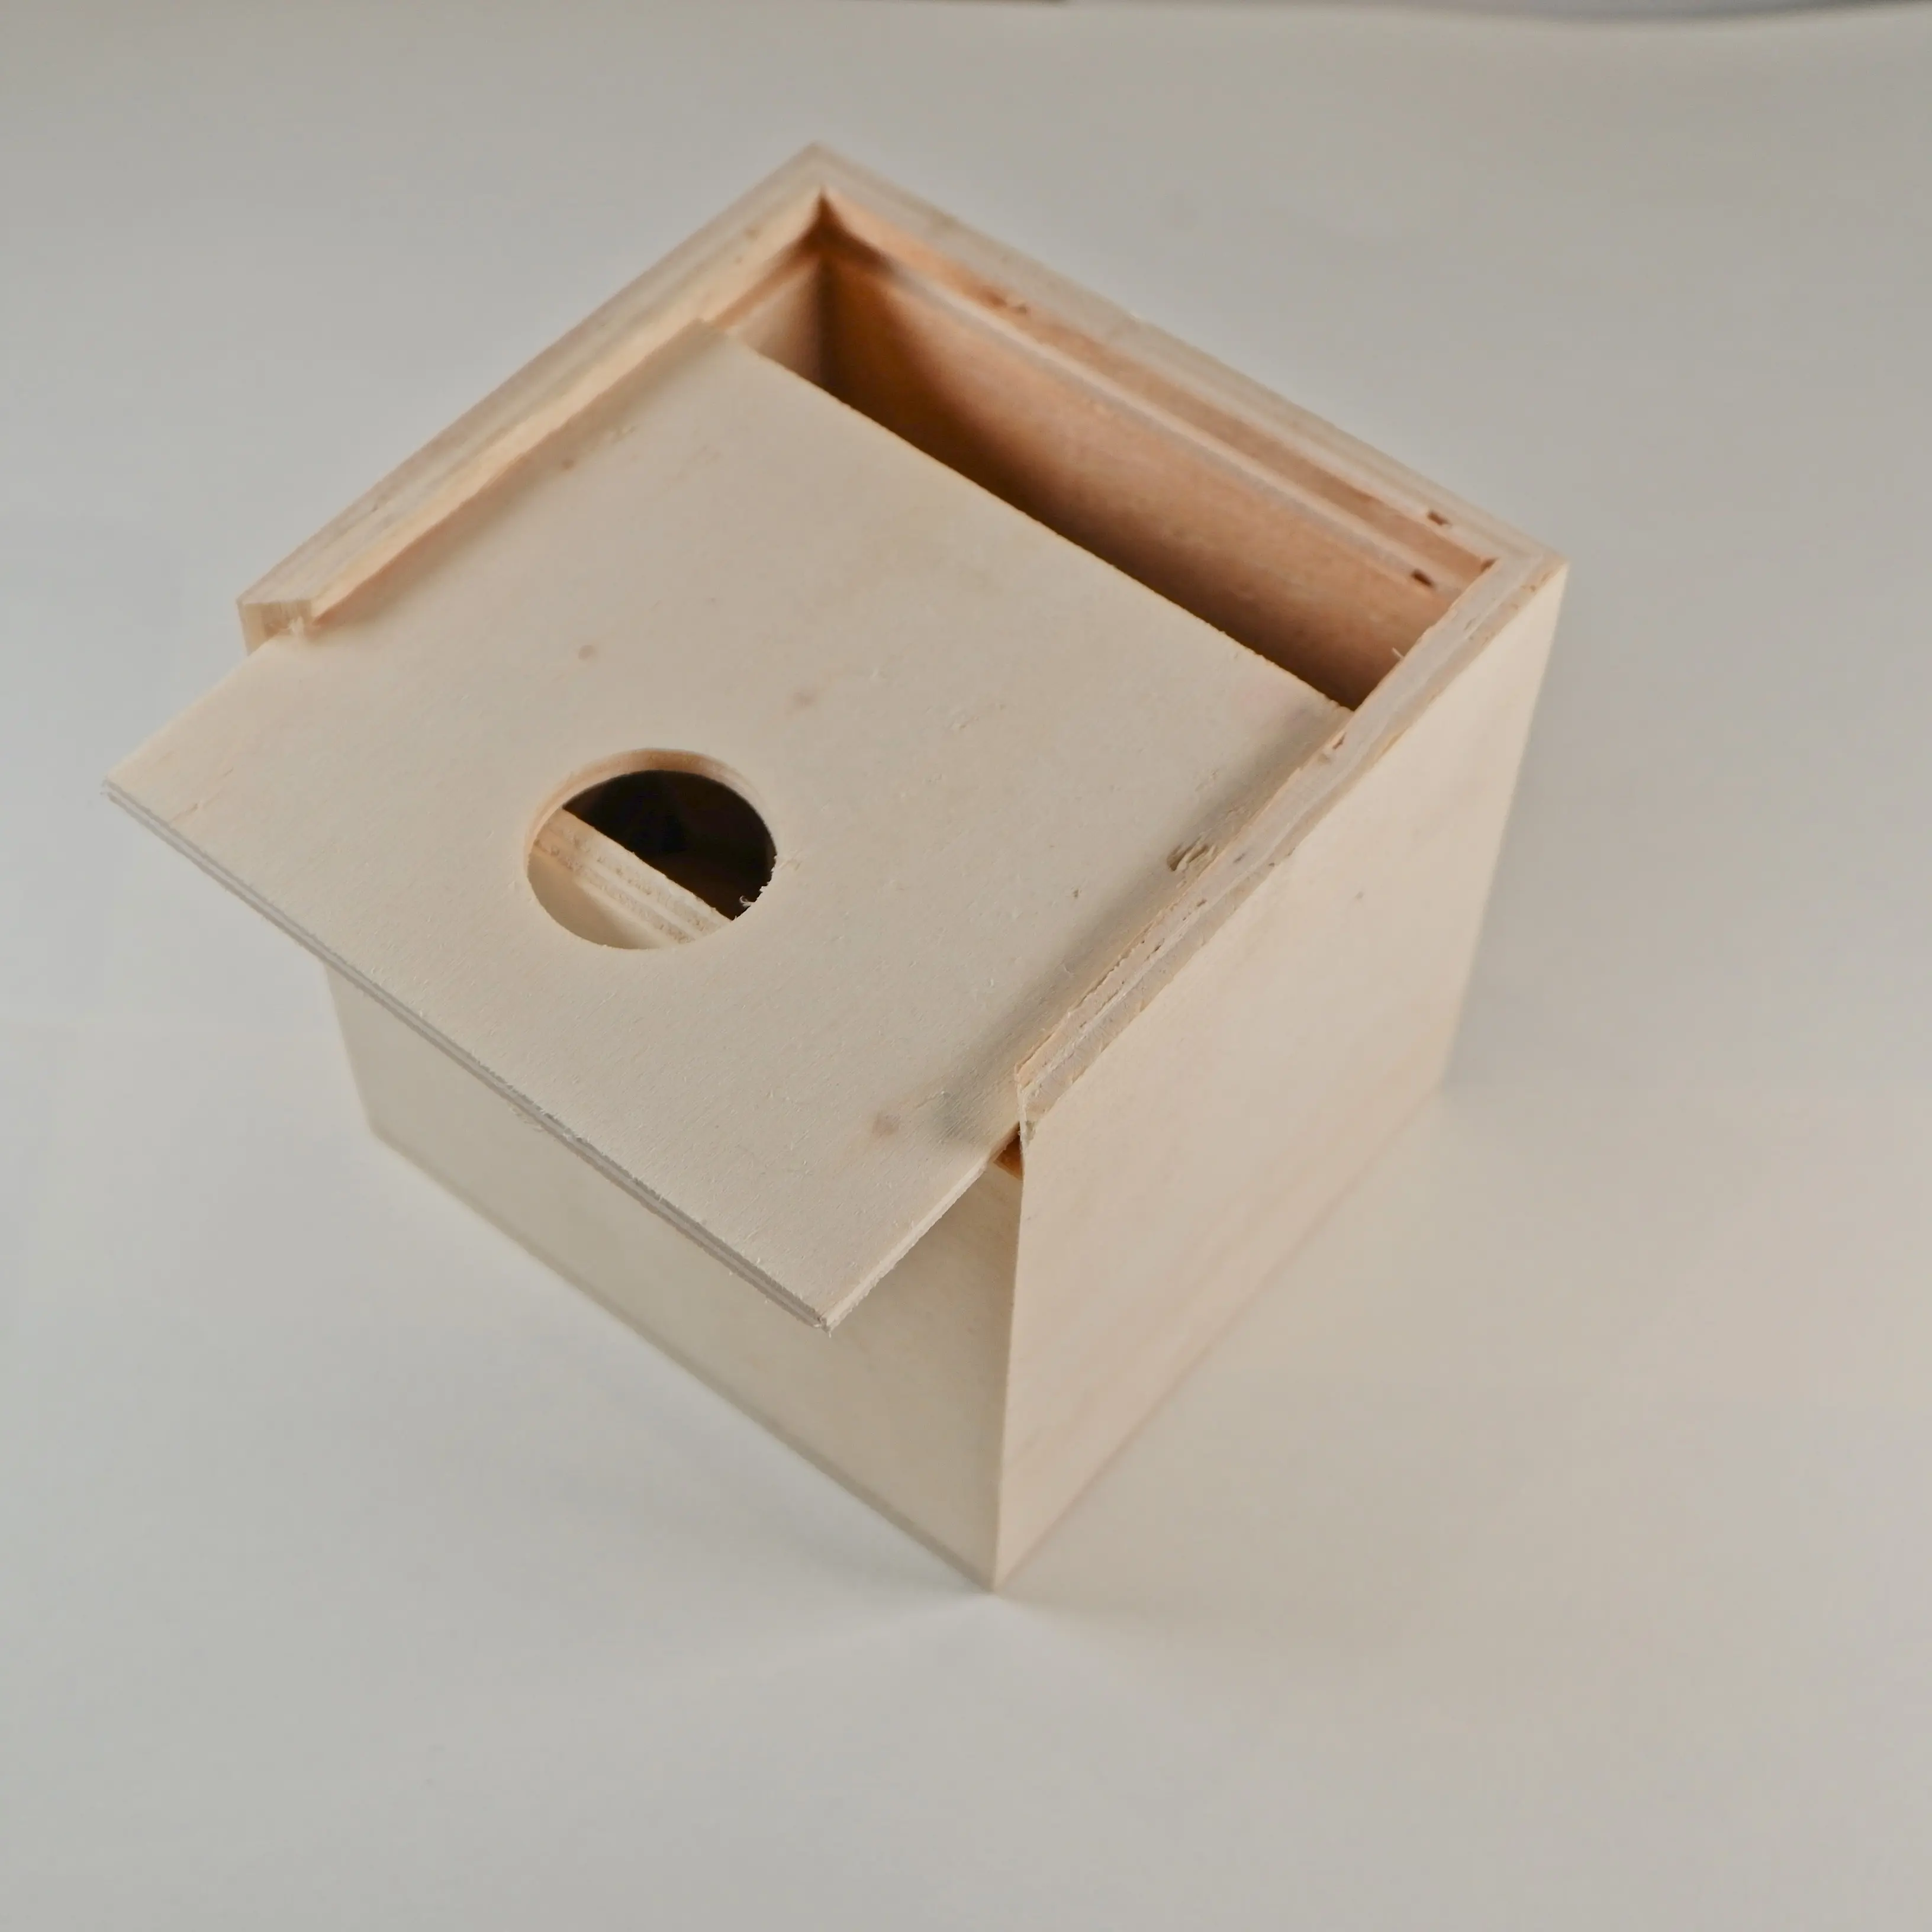 Kayar kapak ahşap kutu huş ağacı hediye saklama kutusu paketi özelleştirilmiş baskı ahşap kutu